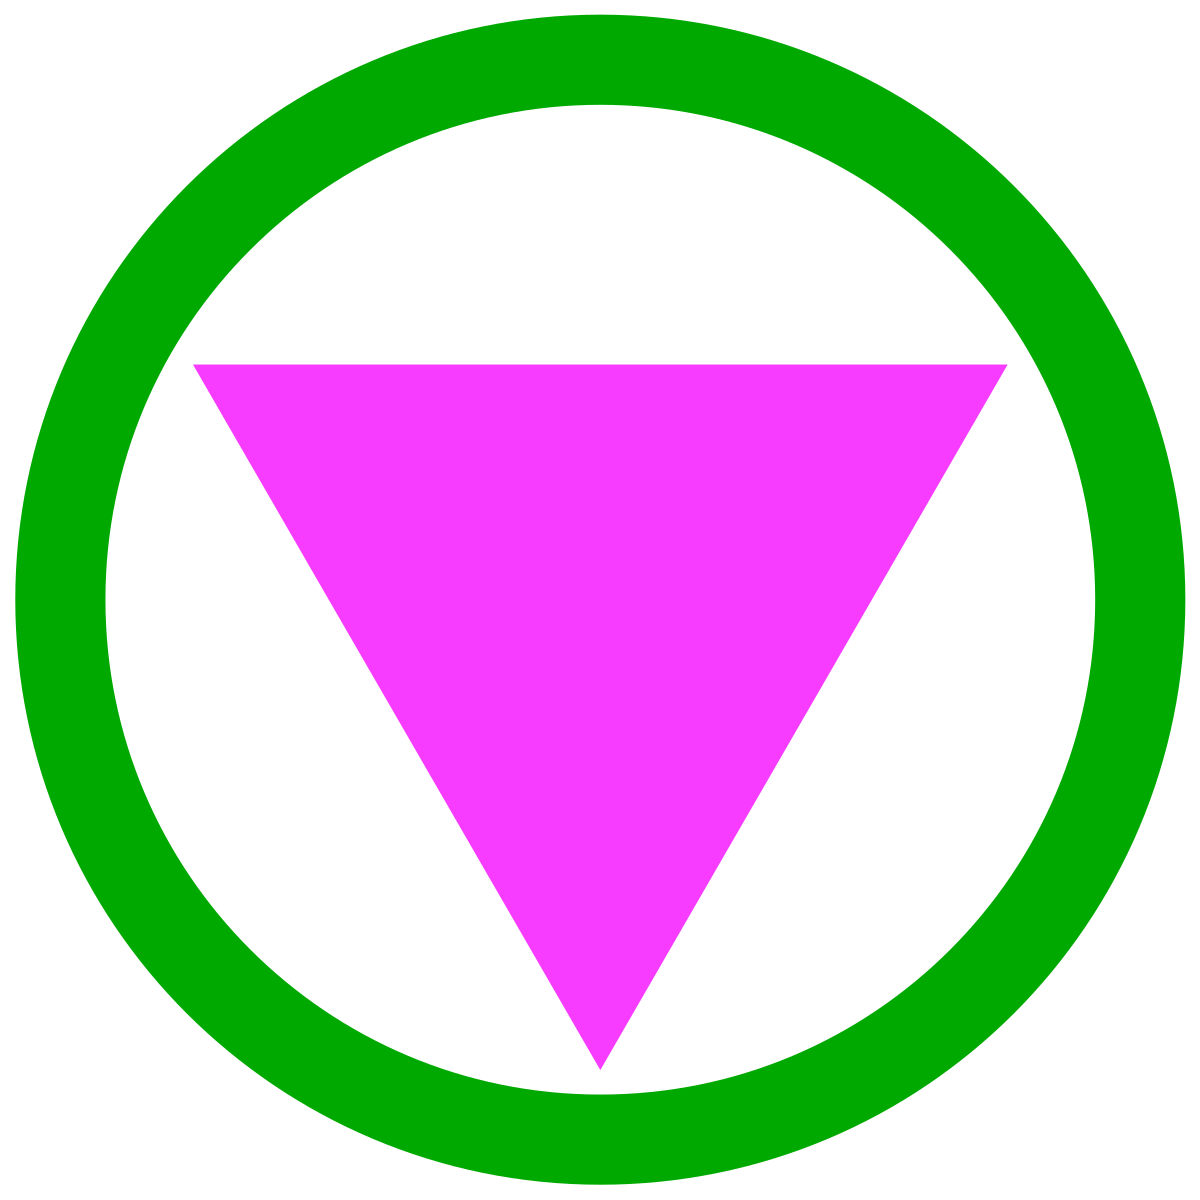 groen-roos symbool geïntroduceerd op anti-homophobia workshops tijdend de opkomst van de safe(r) spaces beweging